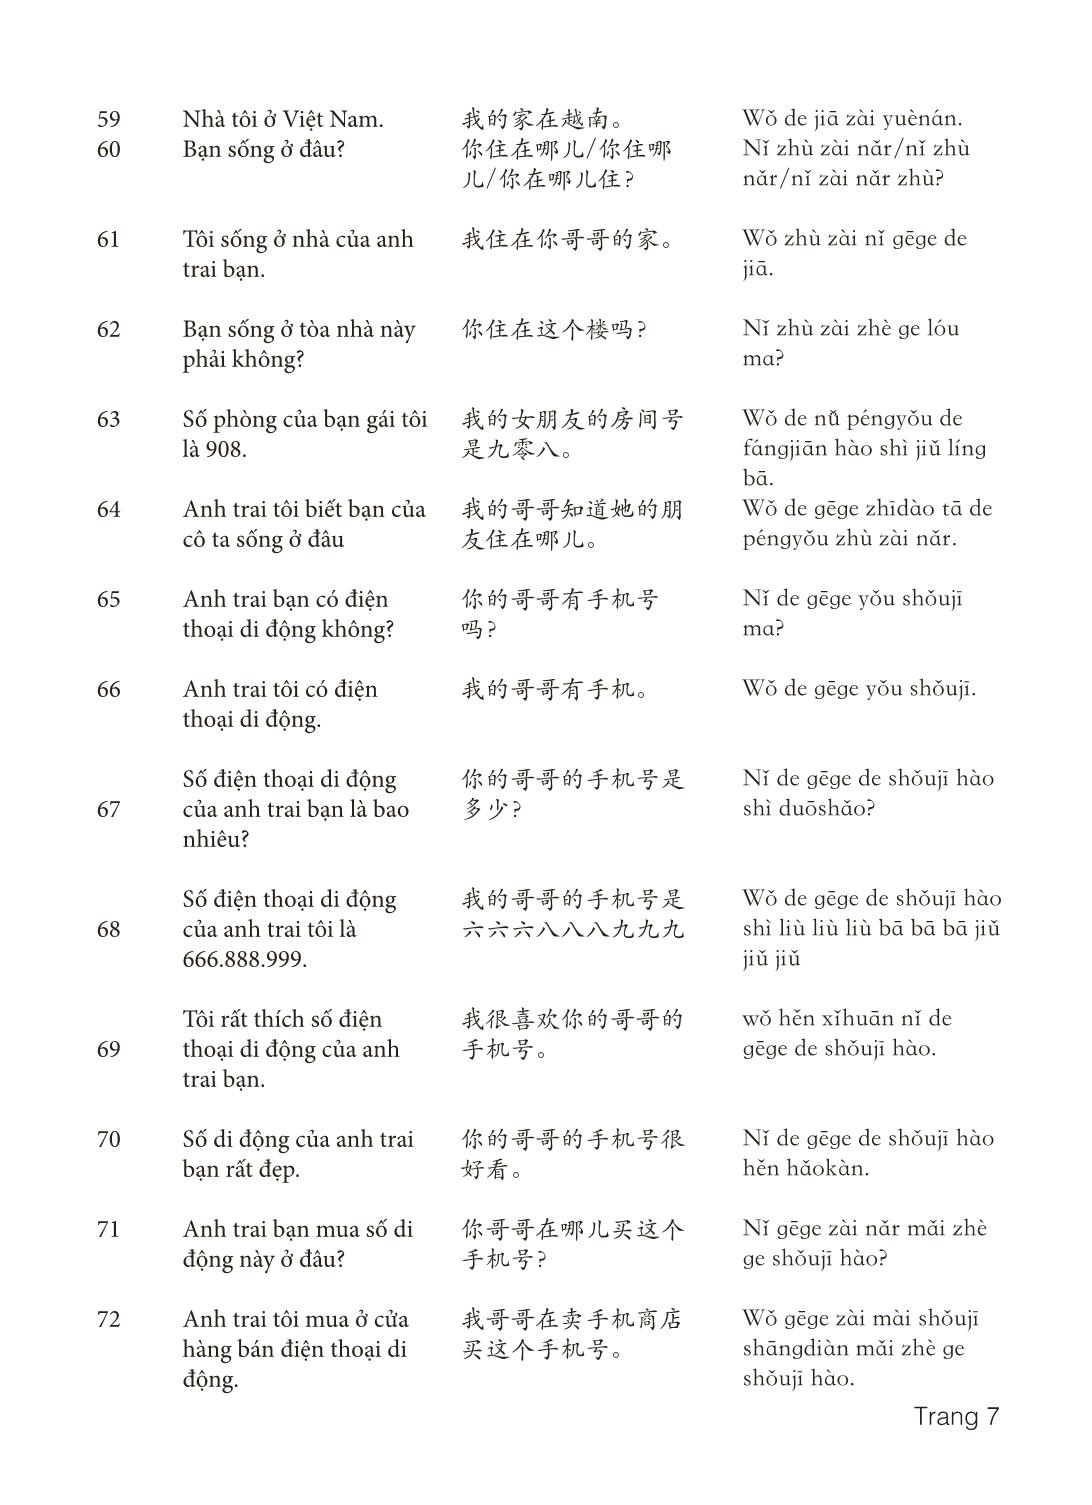 3000 Câu đàm thoại tiếng Hoa - Phần 2 trang 7